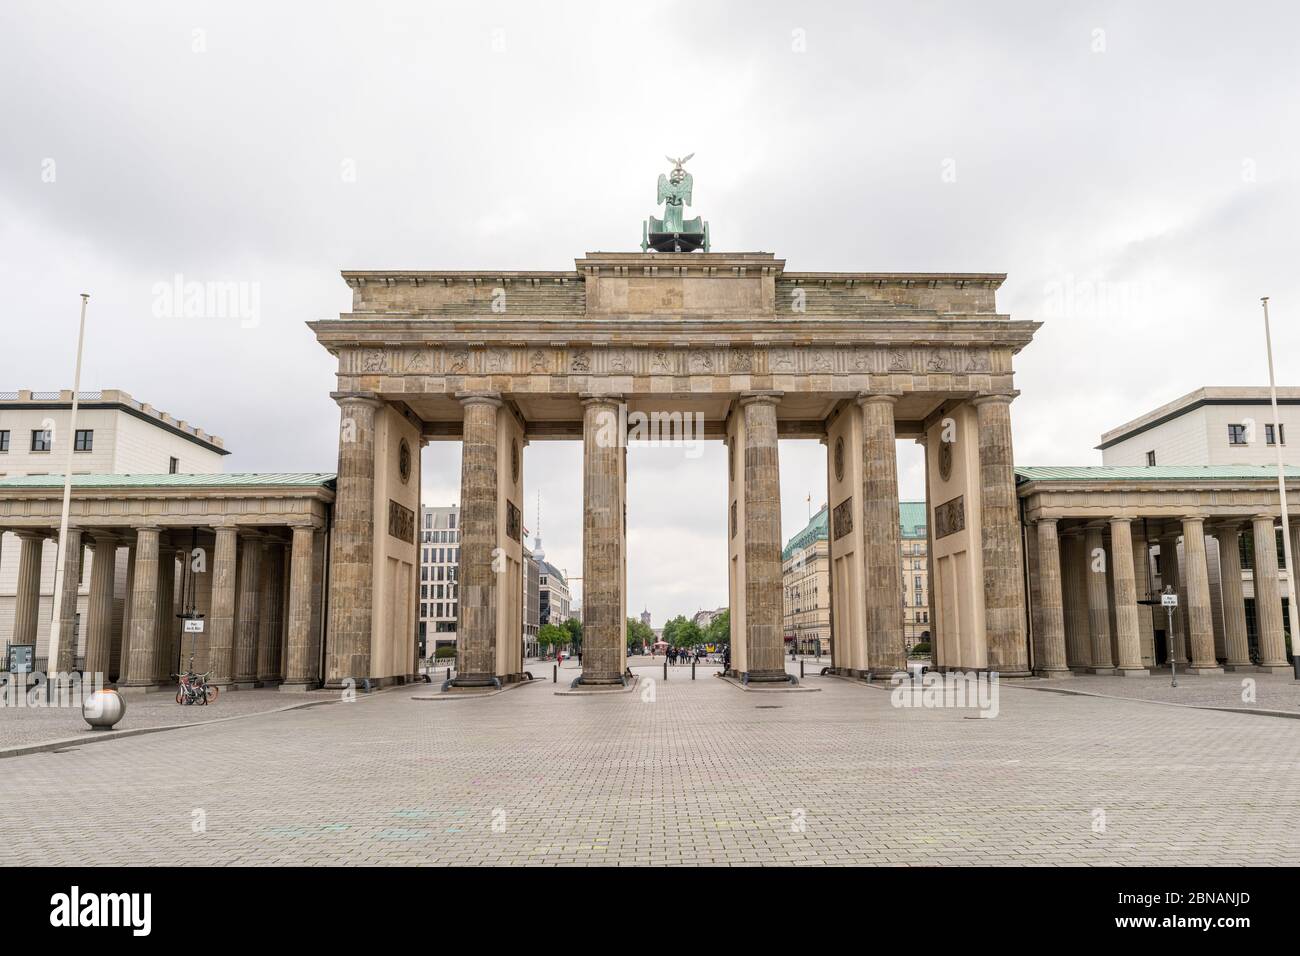 La storica porta di Brandeburgo è un punto di riferimento di Berlino, con lo spazio pubblico conosciuto come Platz des 18. März di fronte, a Berlino, Germania Foto Stock